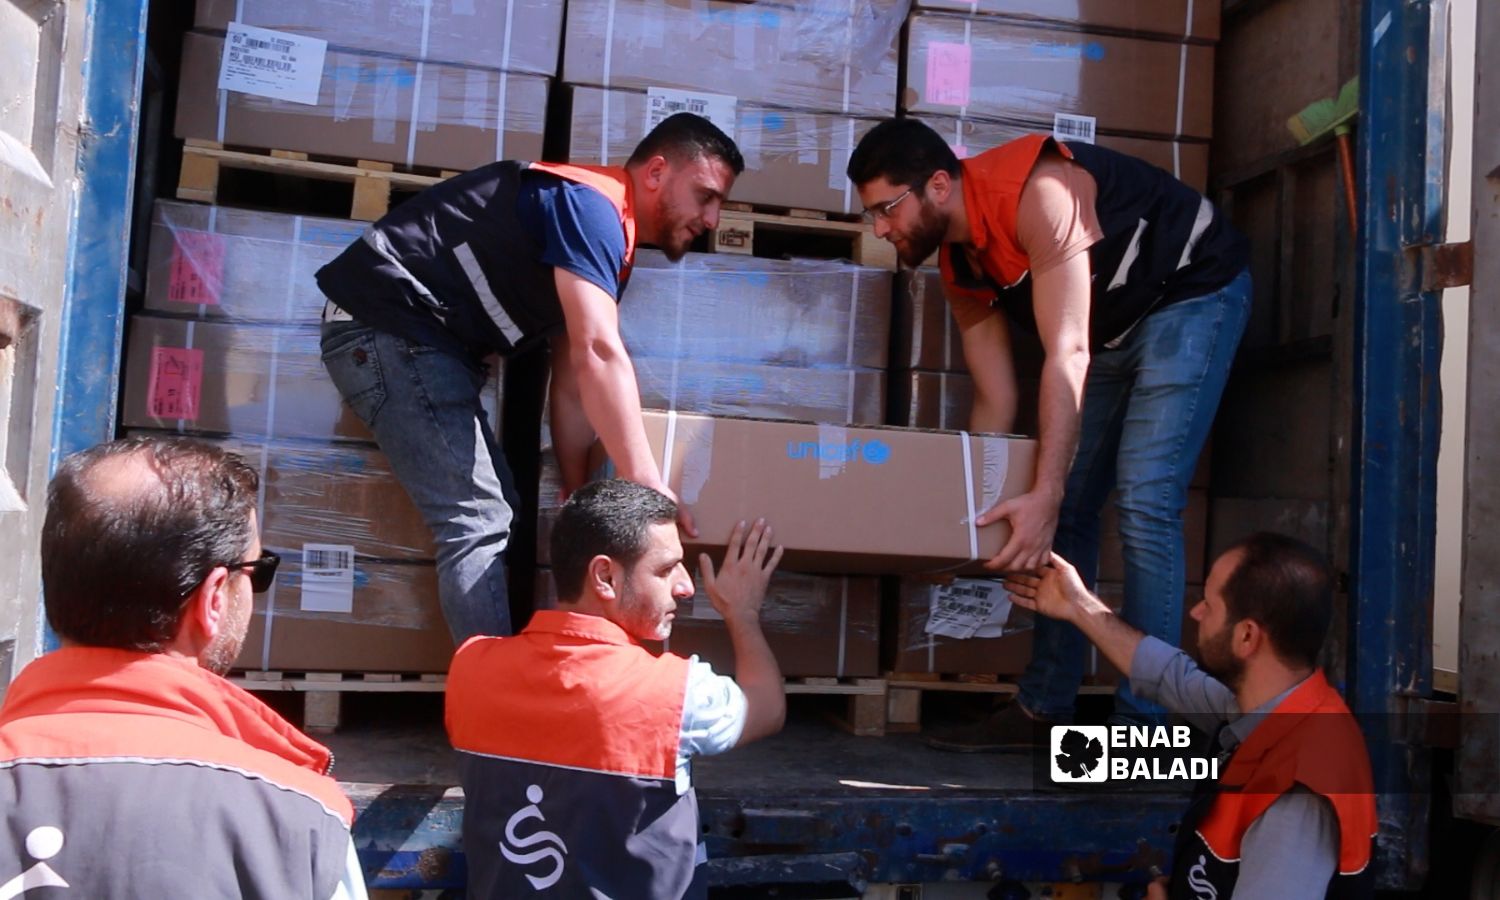 مساعدات مرسلة من منظمة "يونيسف" إلى شمال غربي سوريا في معبر "باب الهوى"- 19 أيلول 2023 (عنب بلدي/ أنس الخولي)